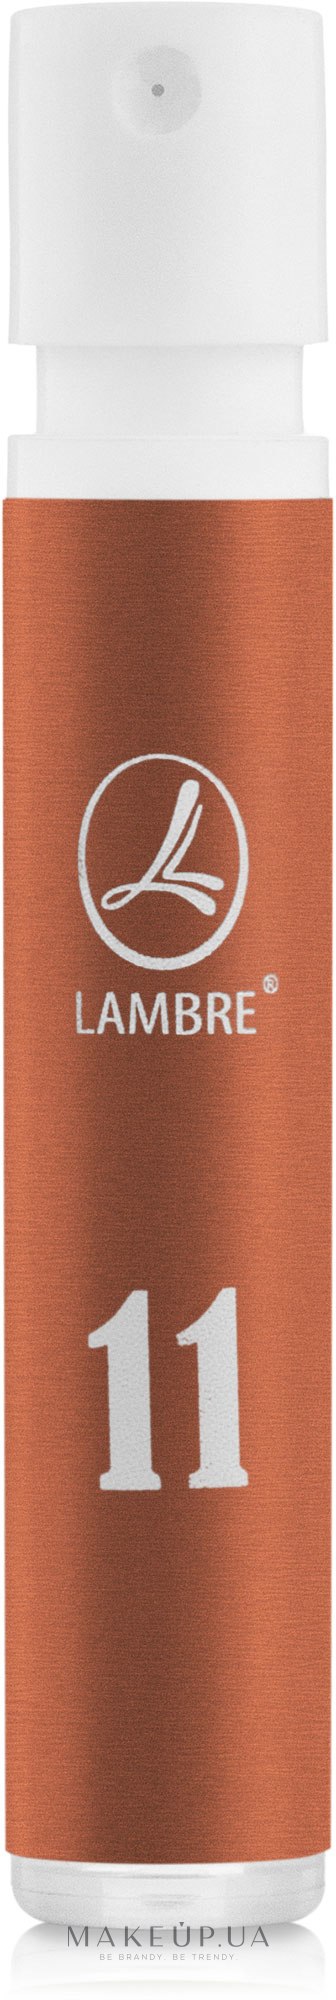 Lambre № 11 - Духи (пробник) — фото 1.2ml